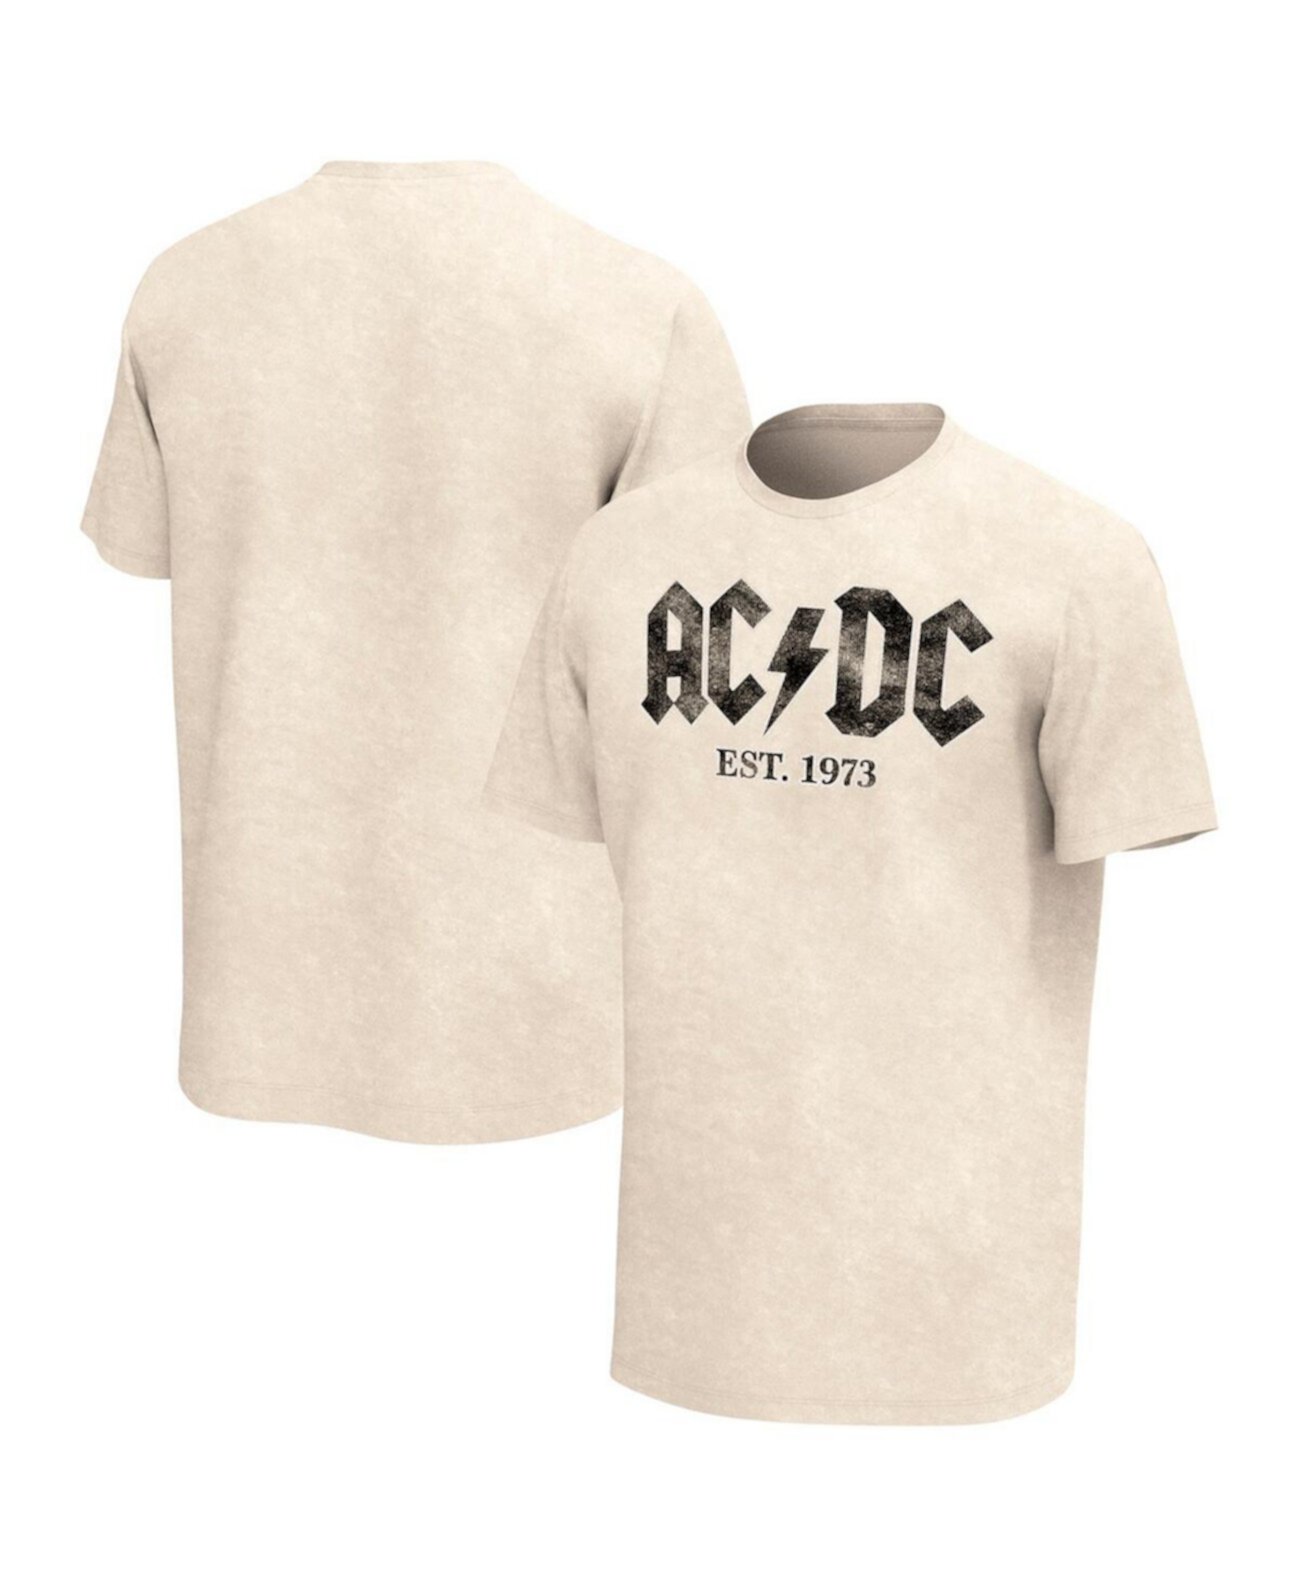 Мужской загар AC, DC Приблиз. футболка 1973 года с мытым рисунком Philcos